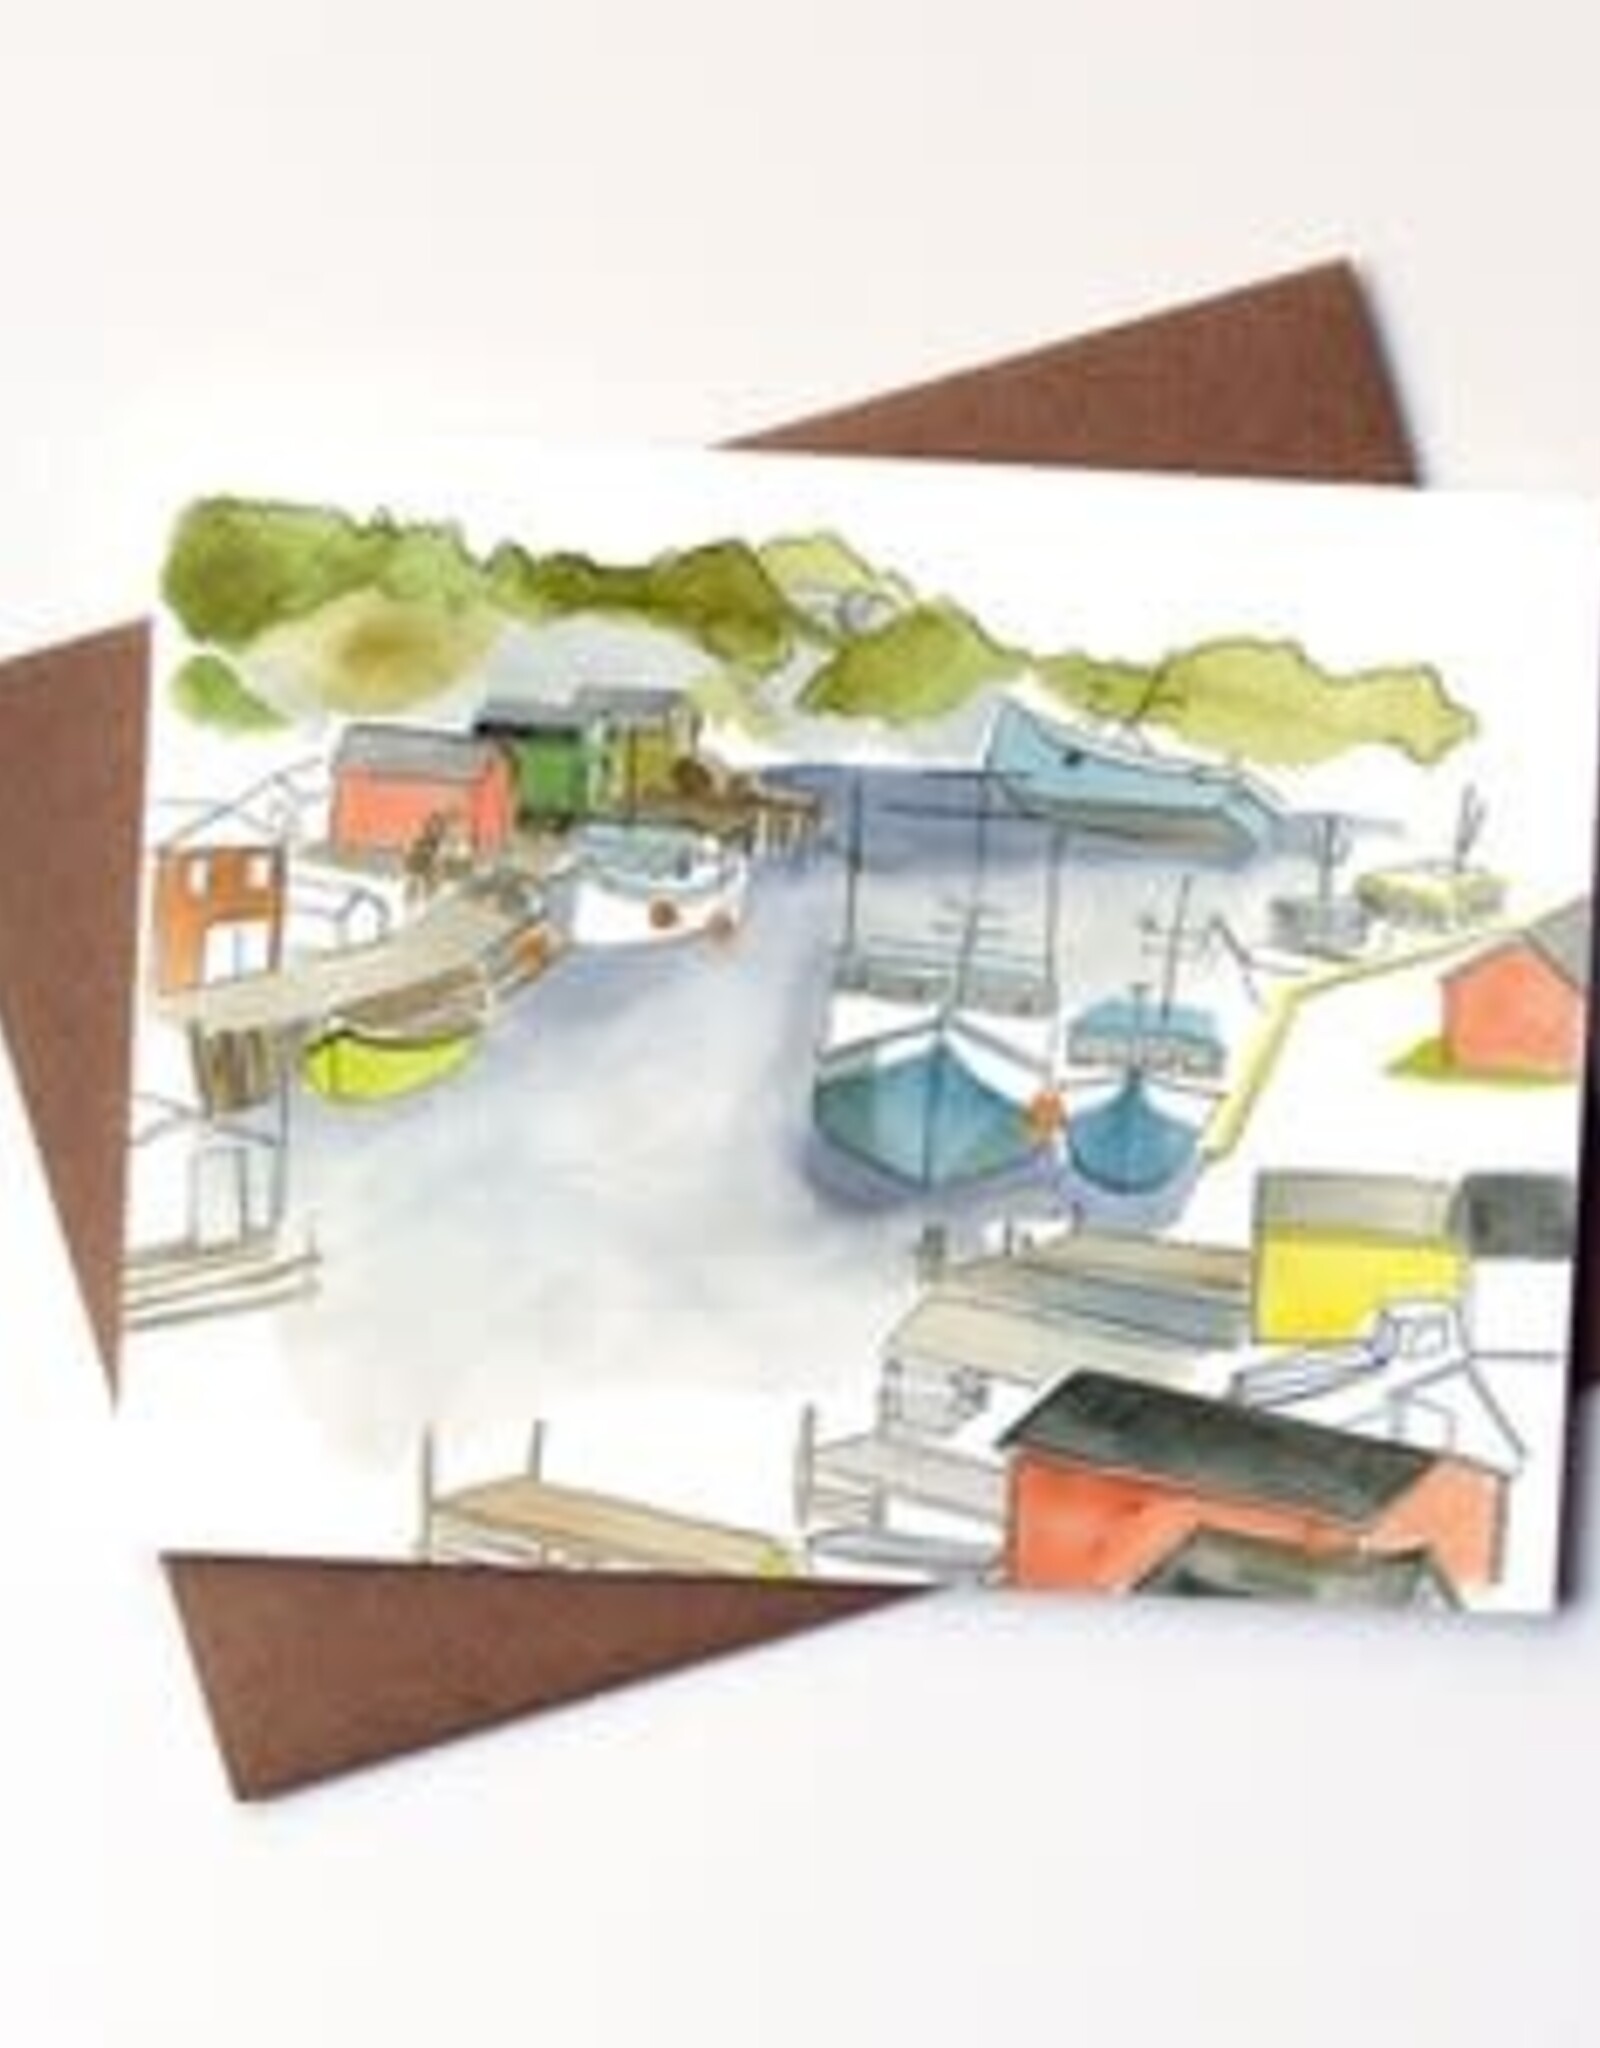 Kat Frick Miller -  Card / Boats, 4.25 x 5.5"